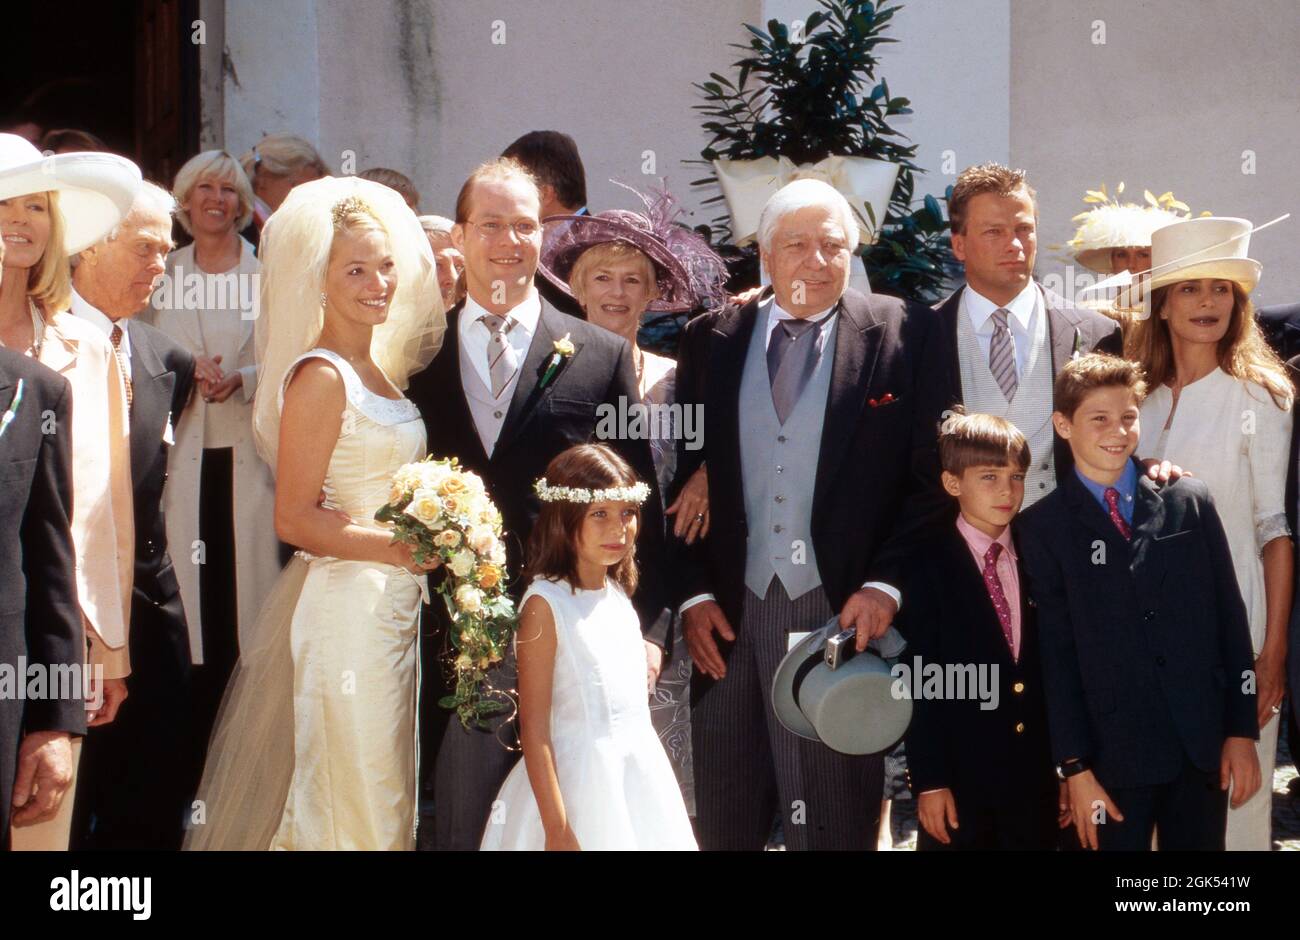 Hochzeit von Gunnar Sachs mit Tania Marsh in der St. Vitus Kiche in  Kufstein, Österreich 1999. at the wedding of Gunnar Sachs with Tania Marsh  in Saint Vitus church at Kufstein, Austria